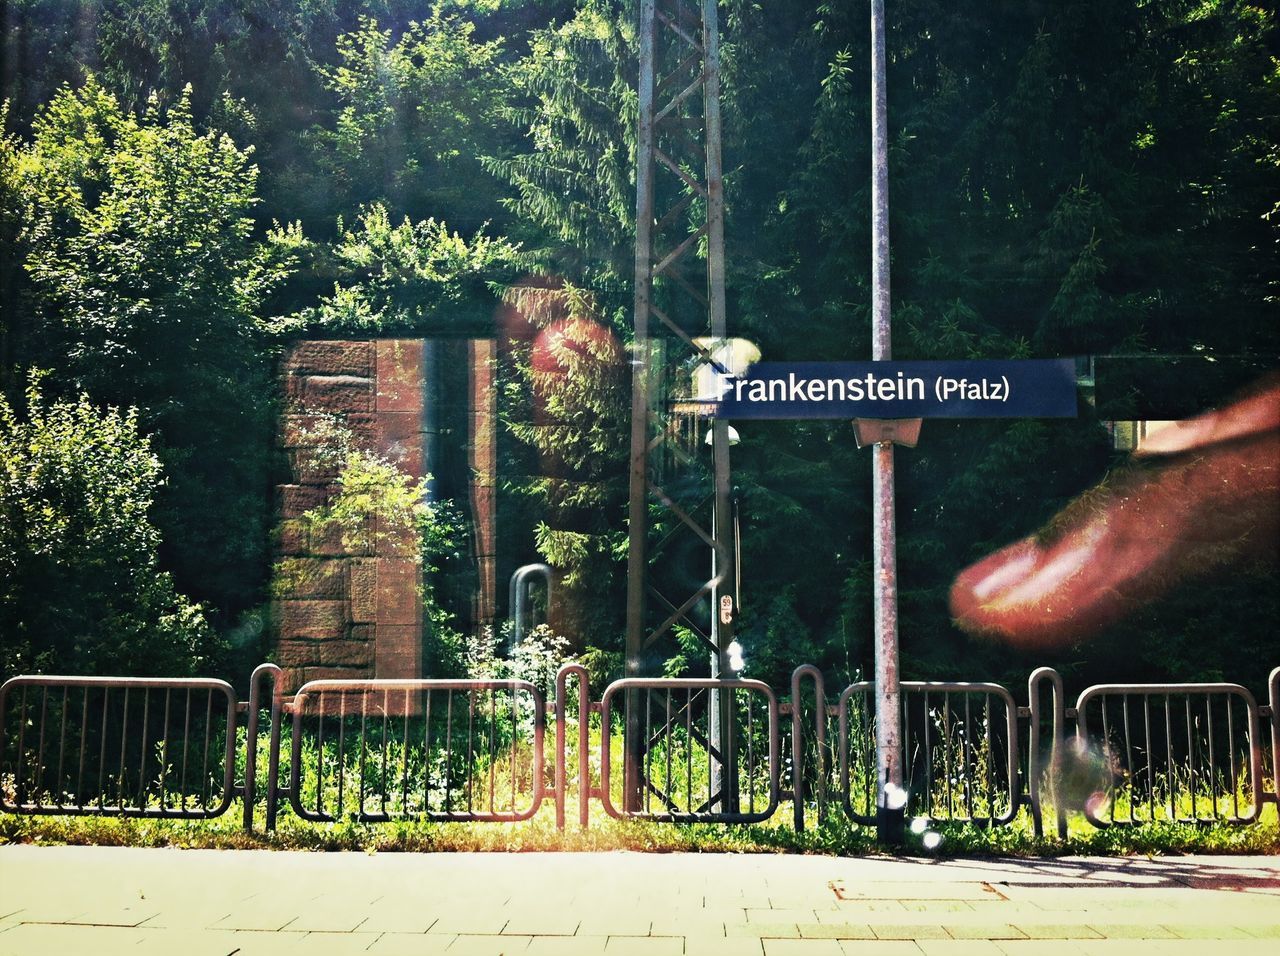 Bahnhof Frankenstein (Pfalz)